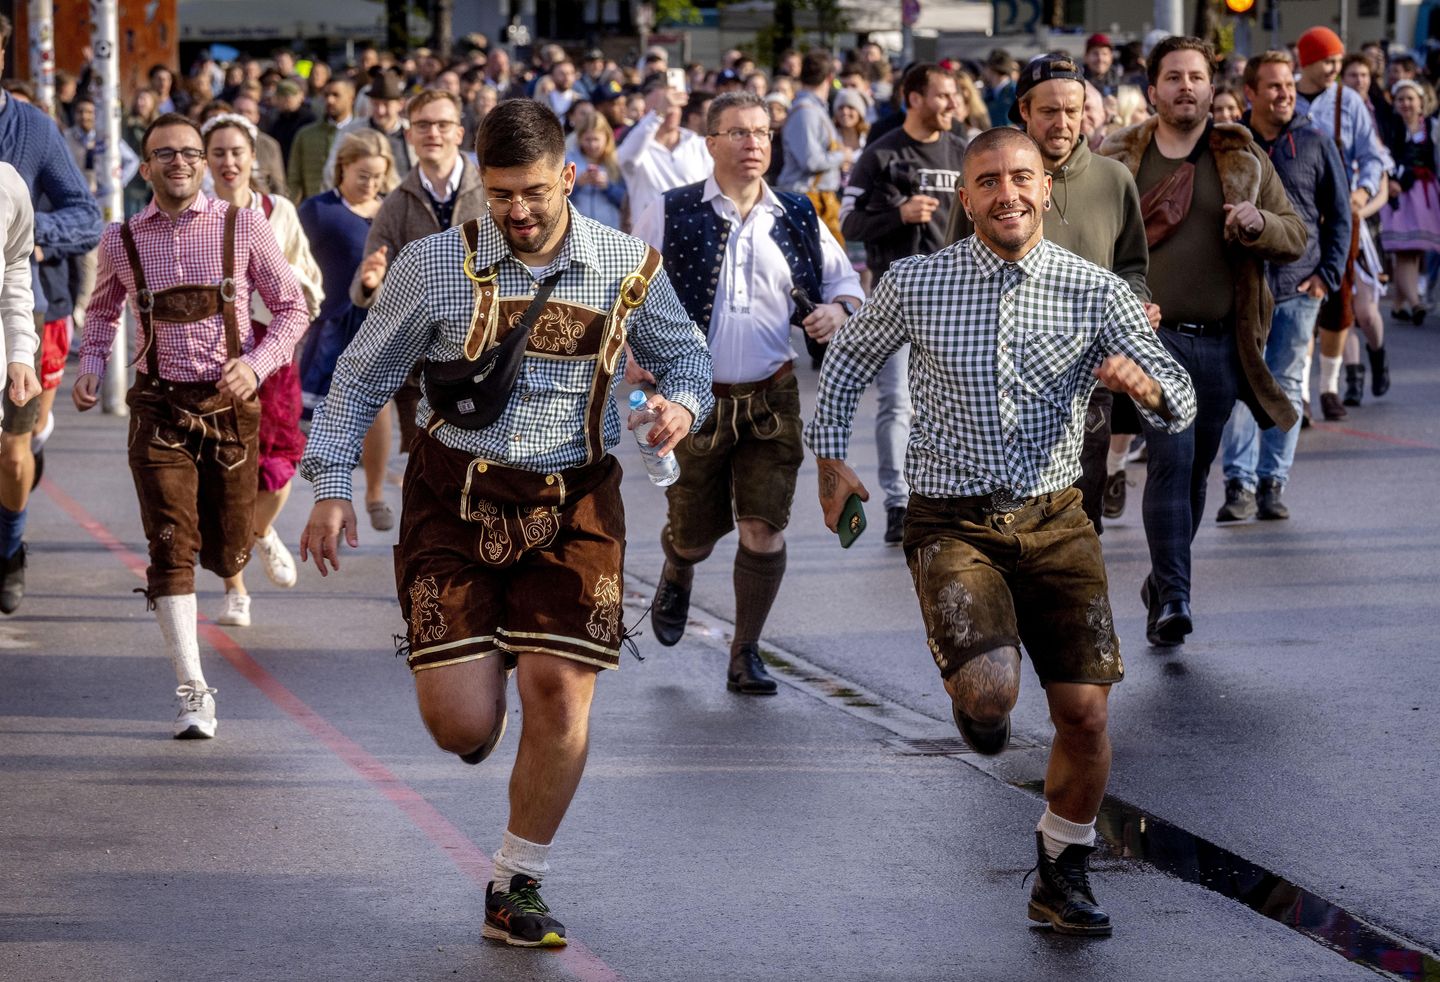 Dinlendi: Almanya'nın Oktoberfest'i 2 yıllık aradan sonra açılıyor